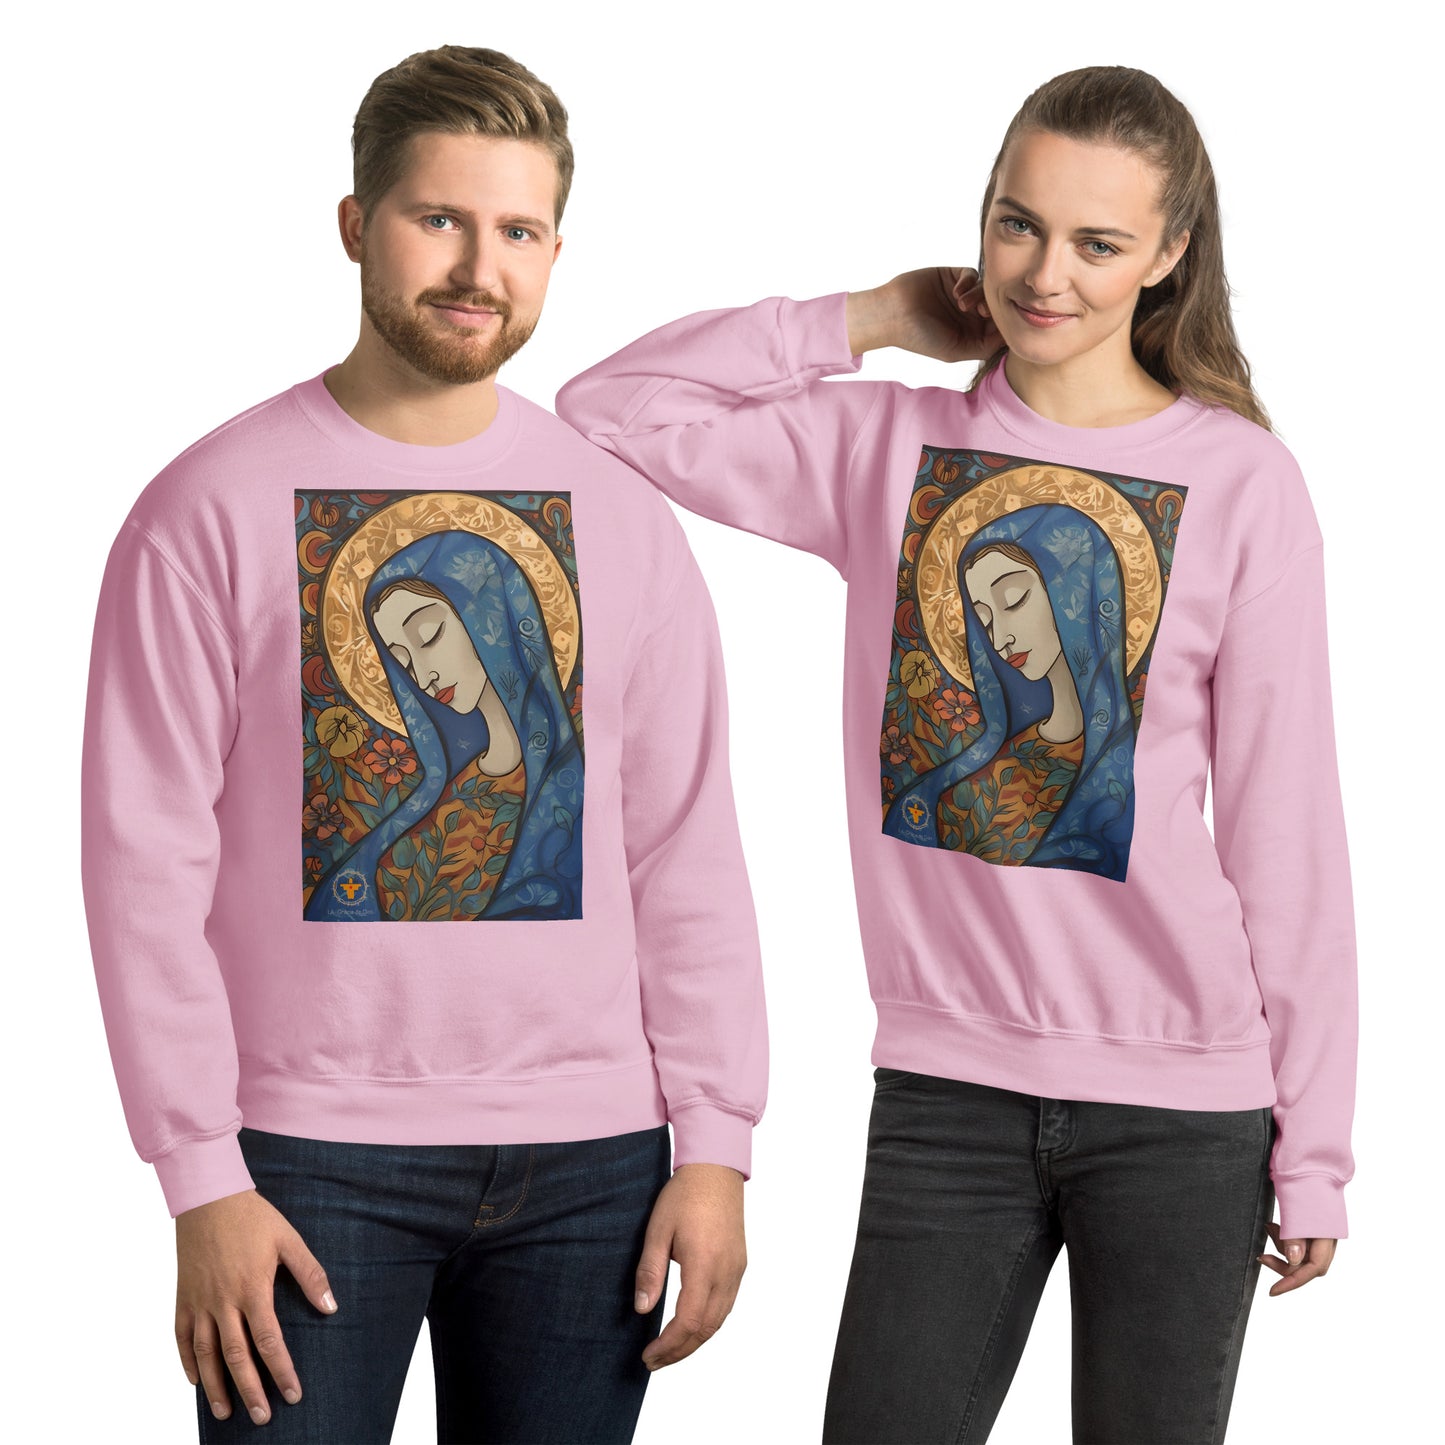 pareja alegre con sudadera rosa lleva imagen de la virgen Maria